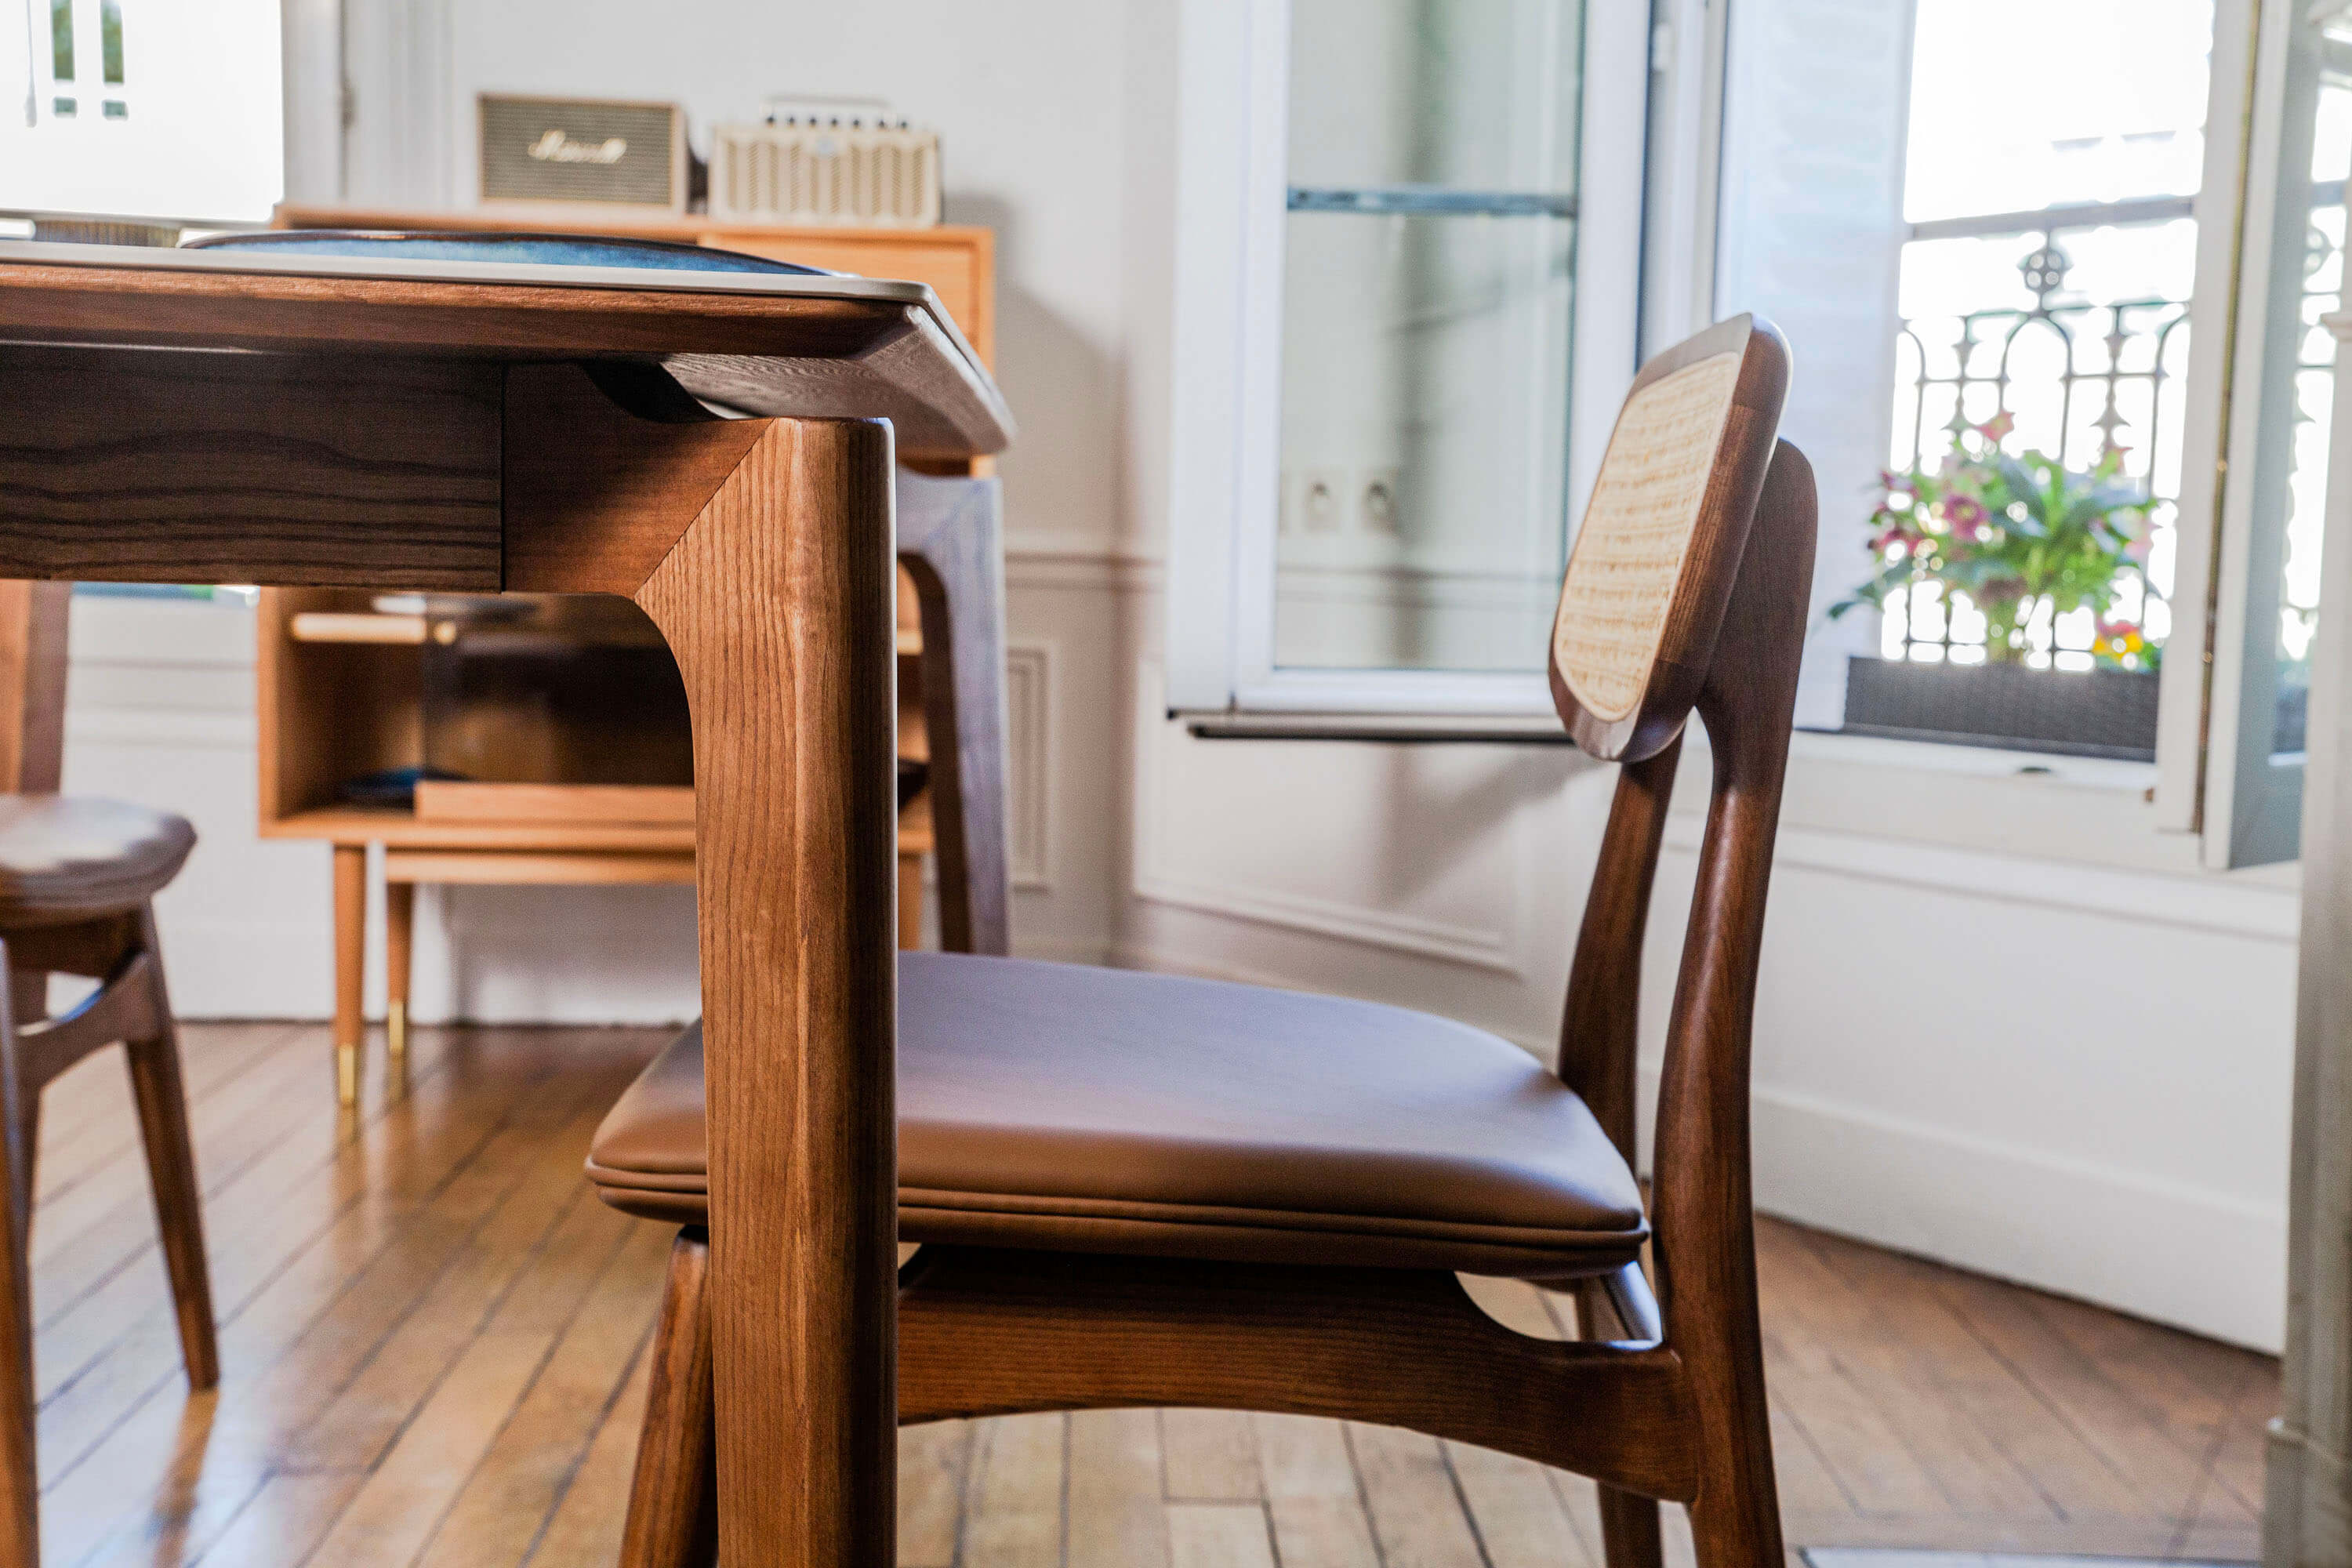 Fainko-paris-ile-de-france-meuble-design-bois-massif-chaise-iman-fauteuil-table